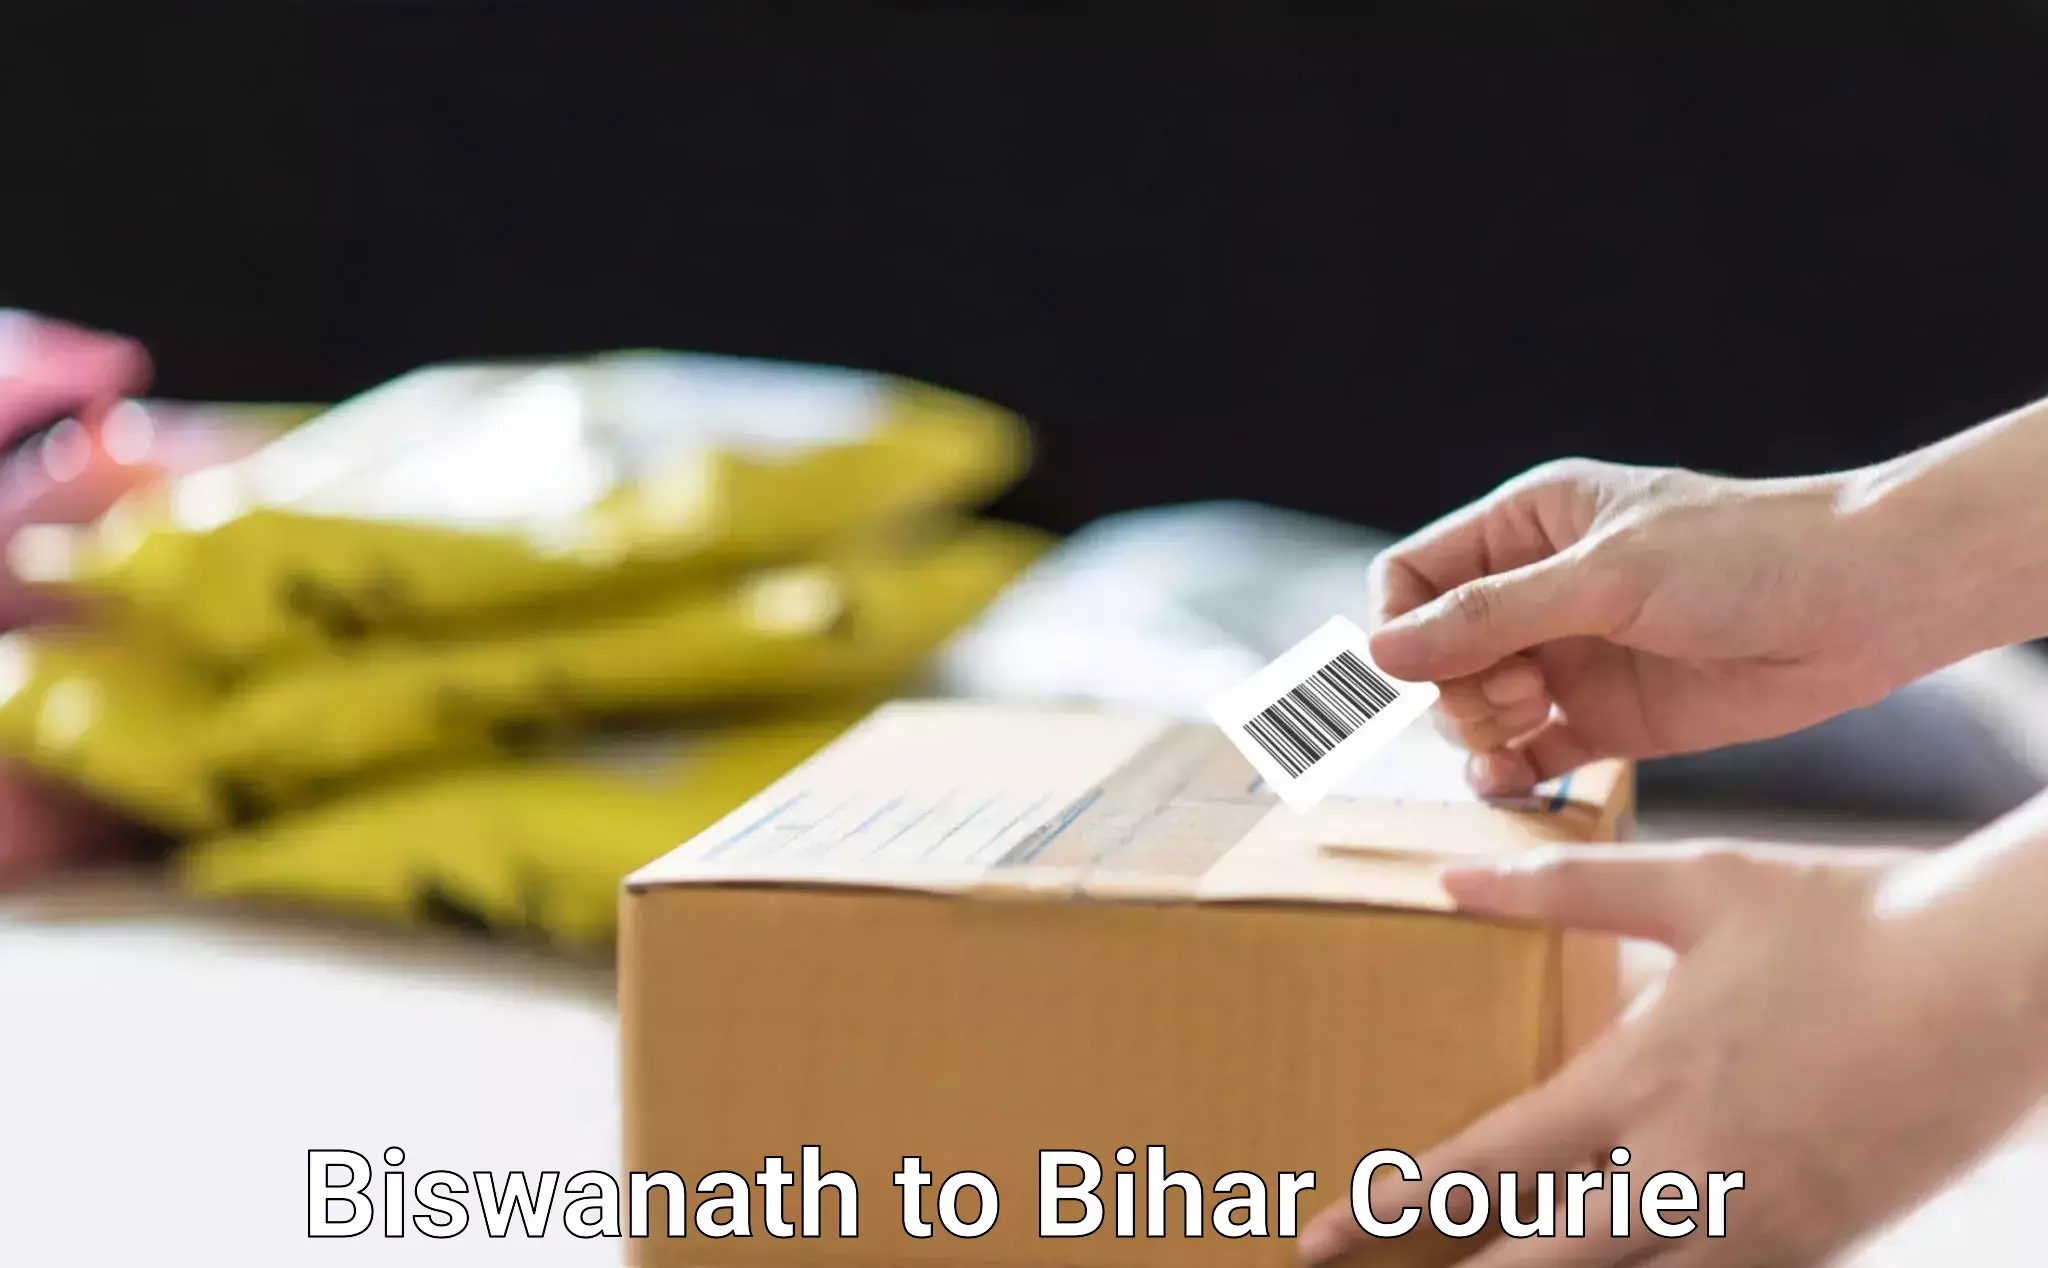 Courier service comparison in Biswanath to Valmiki Nagar